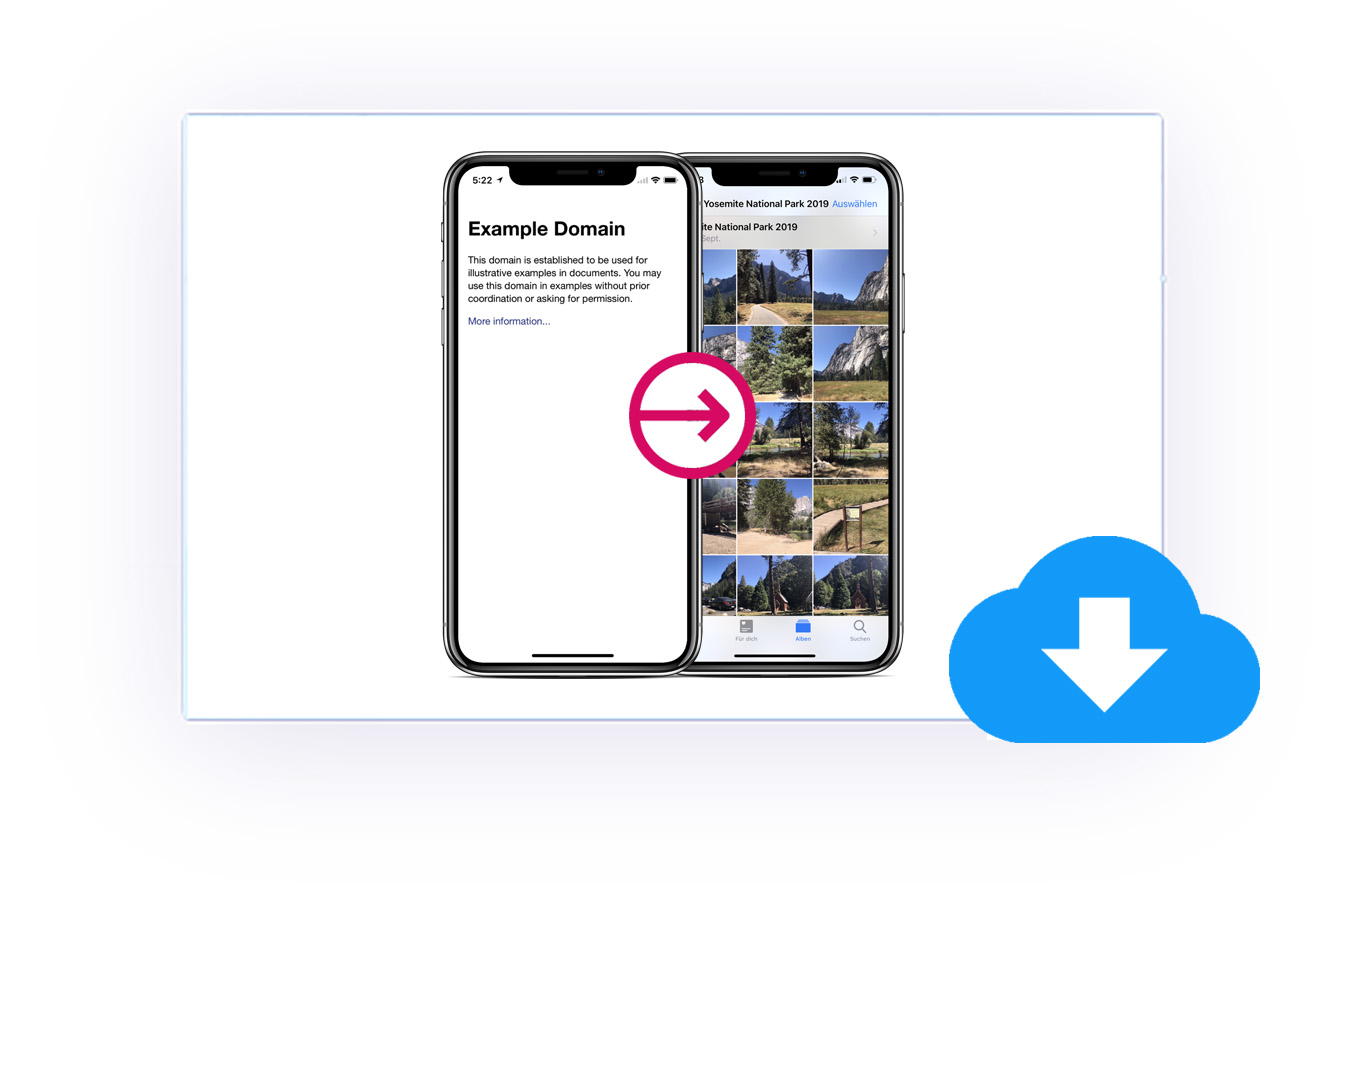 Téléchargements de PDF et d'images basés sur l'application WebView sur iOS et Android